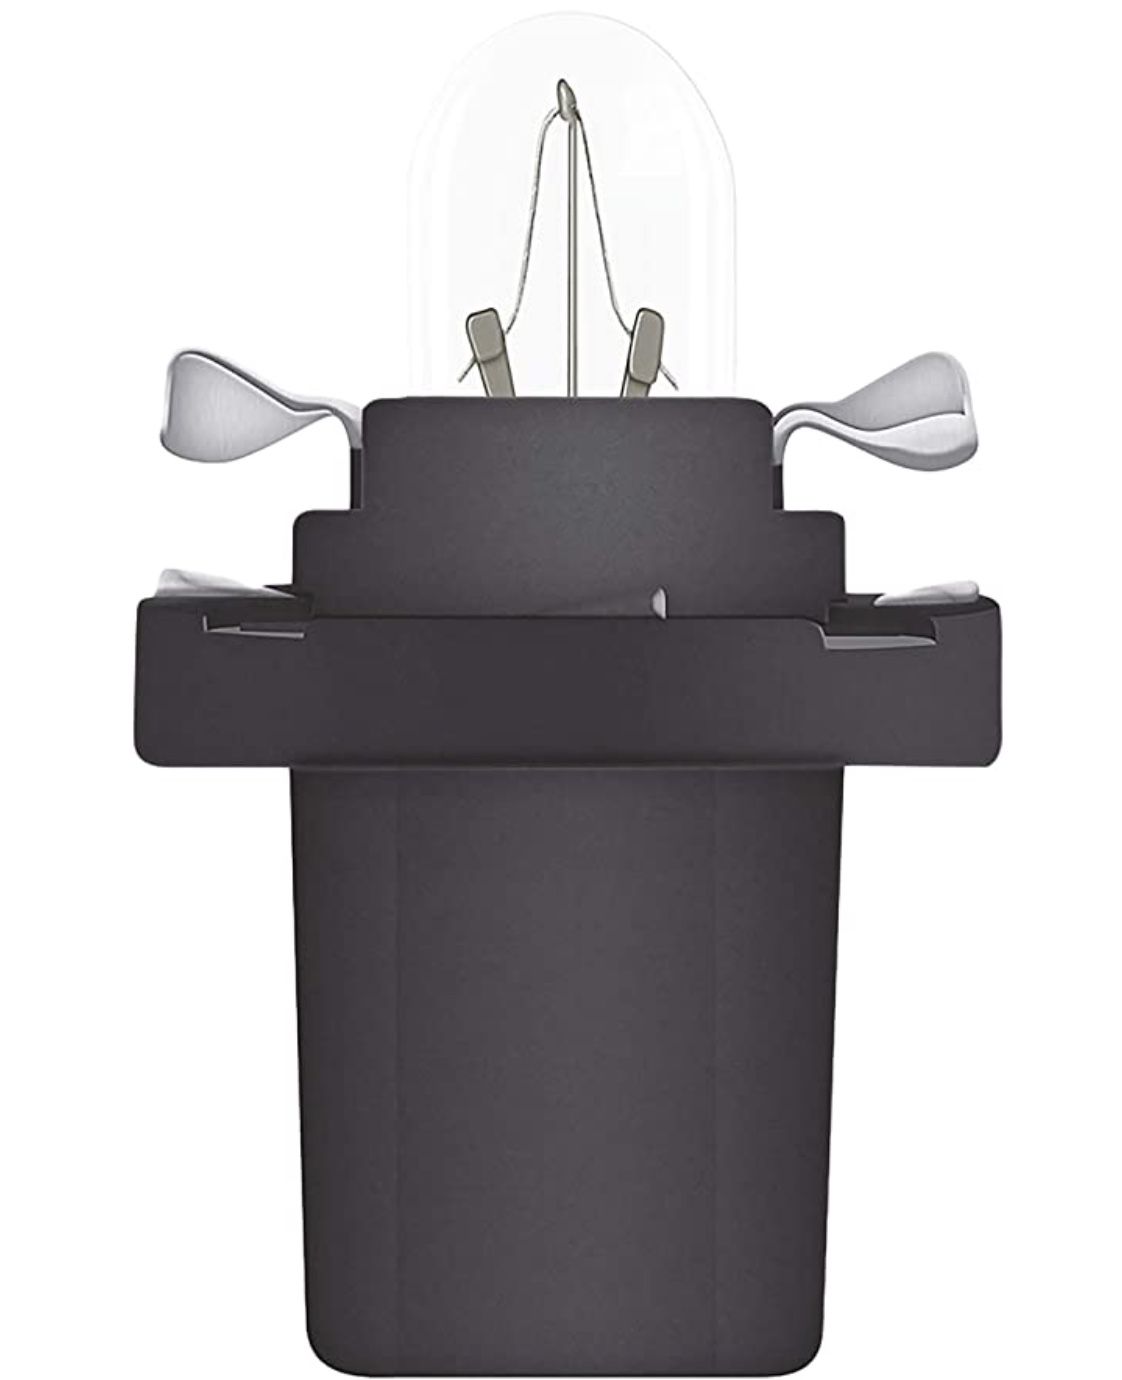 10x Osram Sockel Sonderlampe 1,2W für 1€ (statt 5€)   Prime